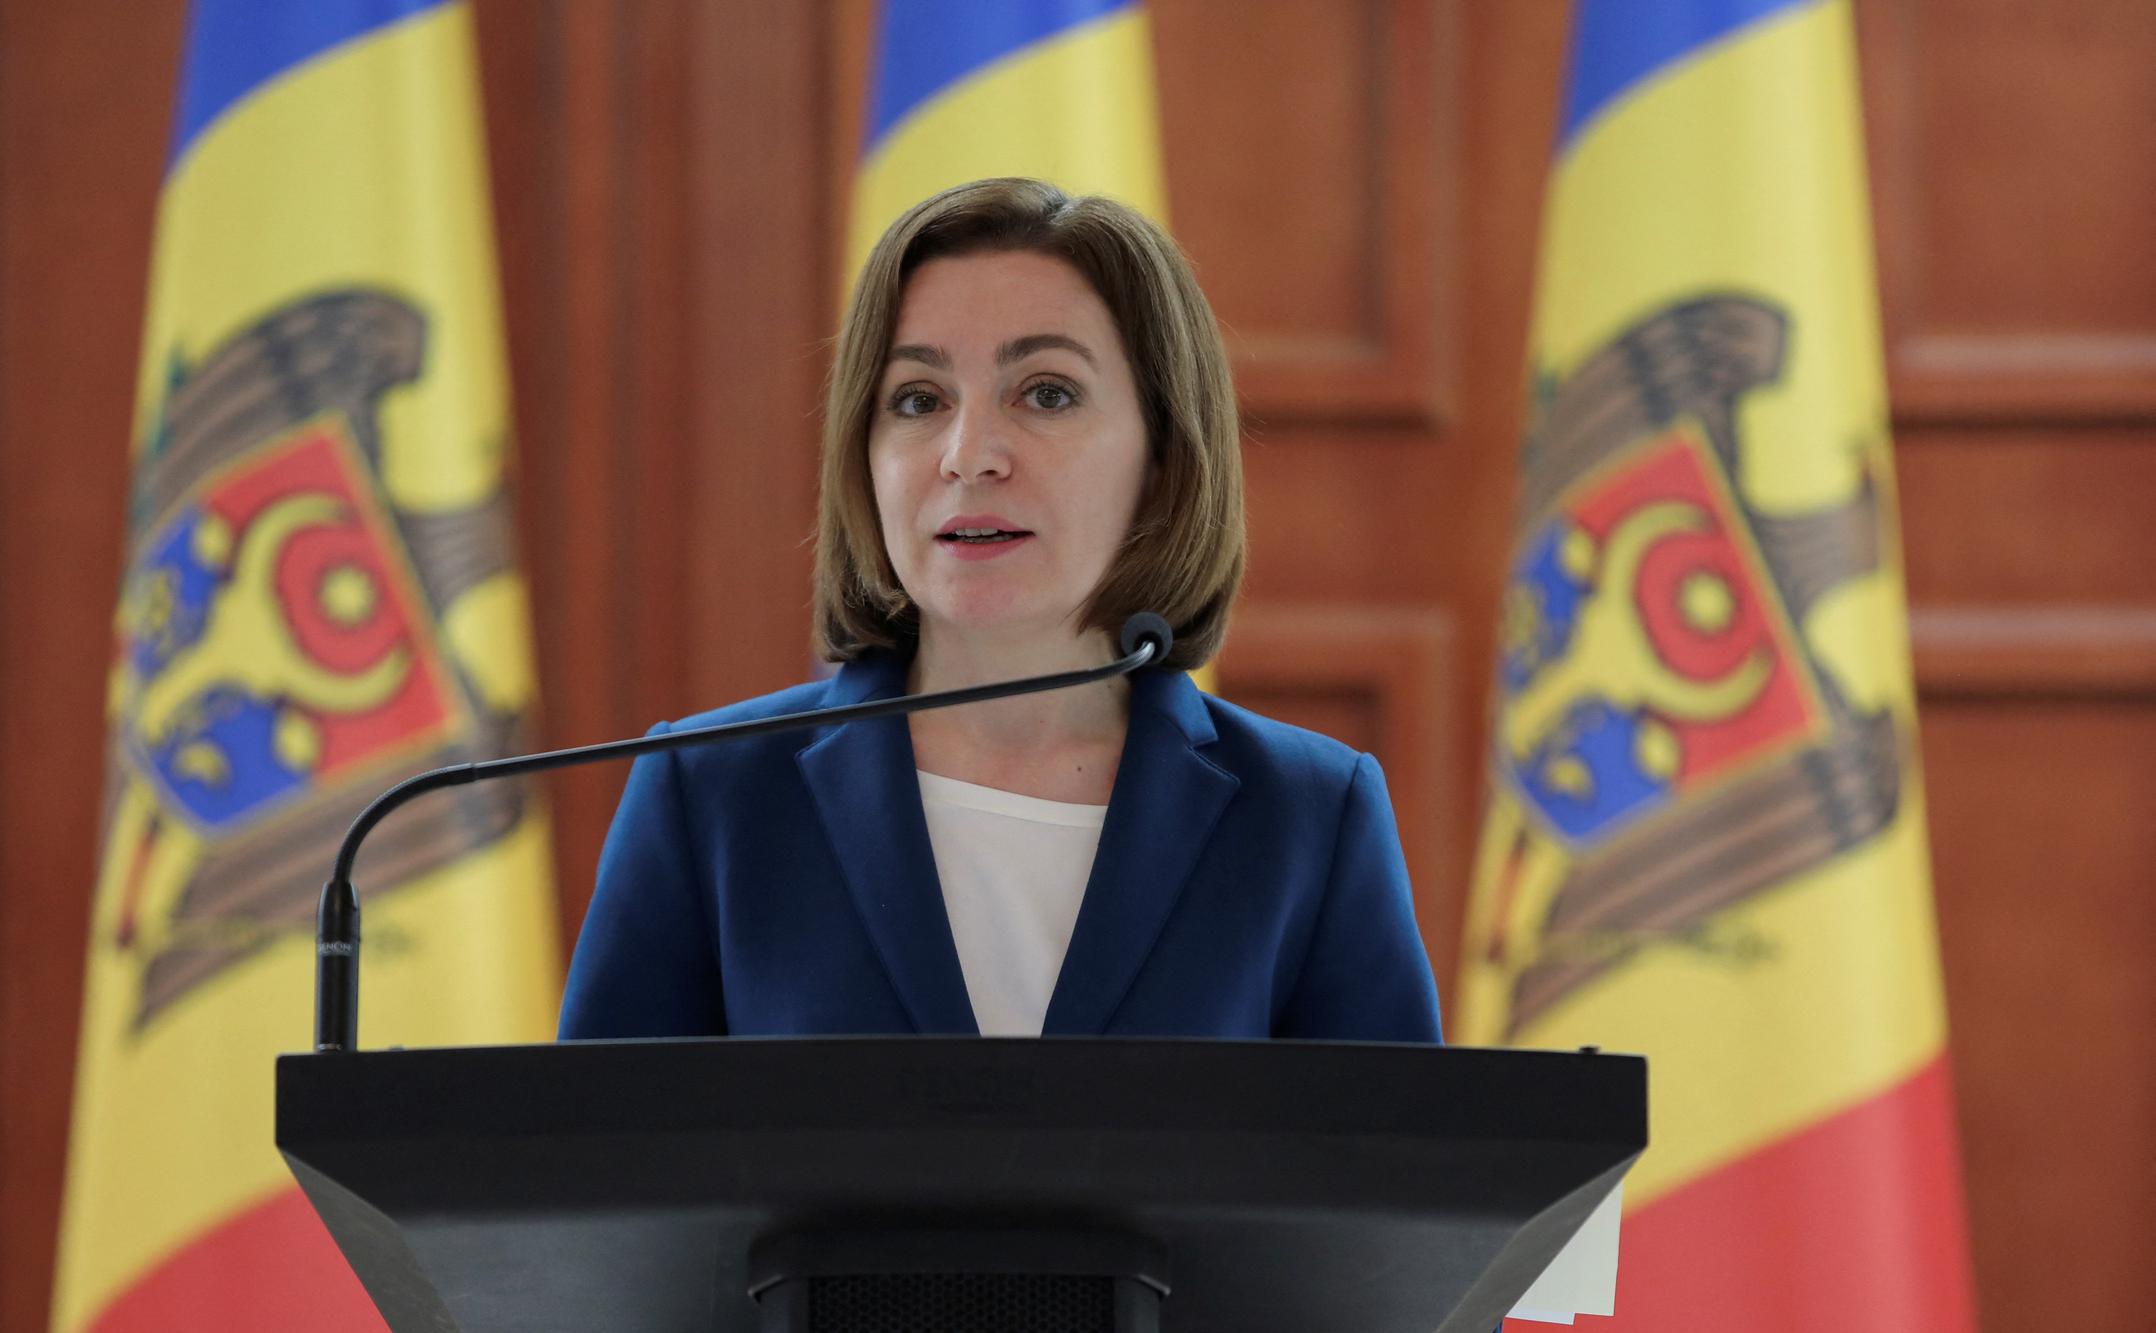 Санду обвинила Россию в попытках дестабилизации ситуации в Молдавии